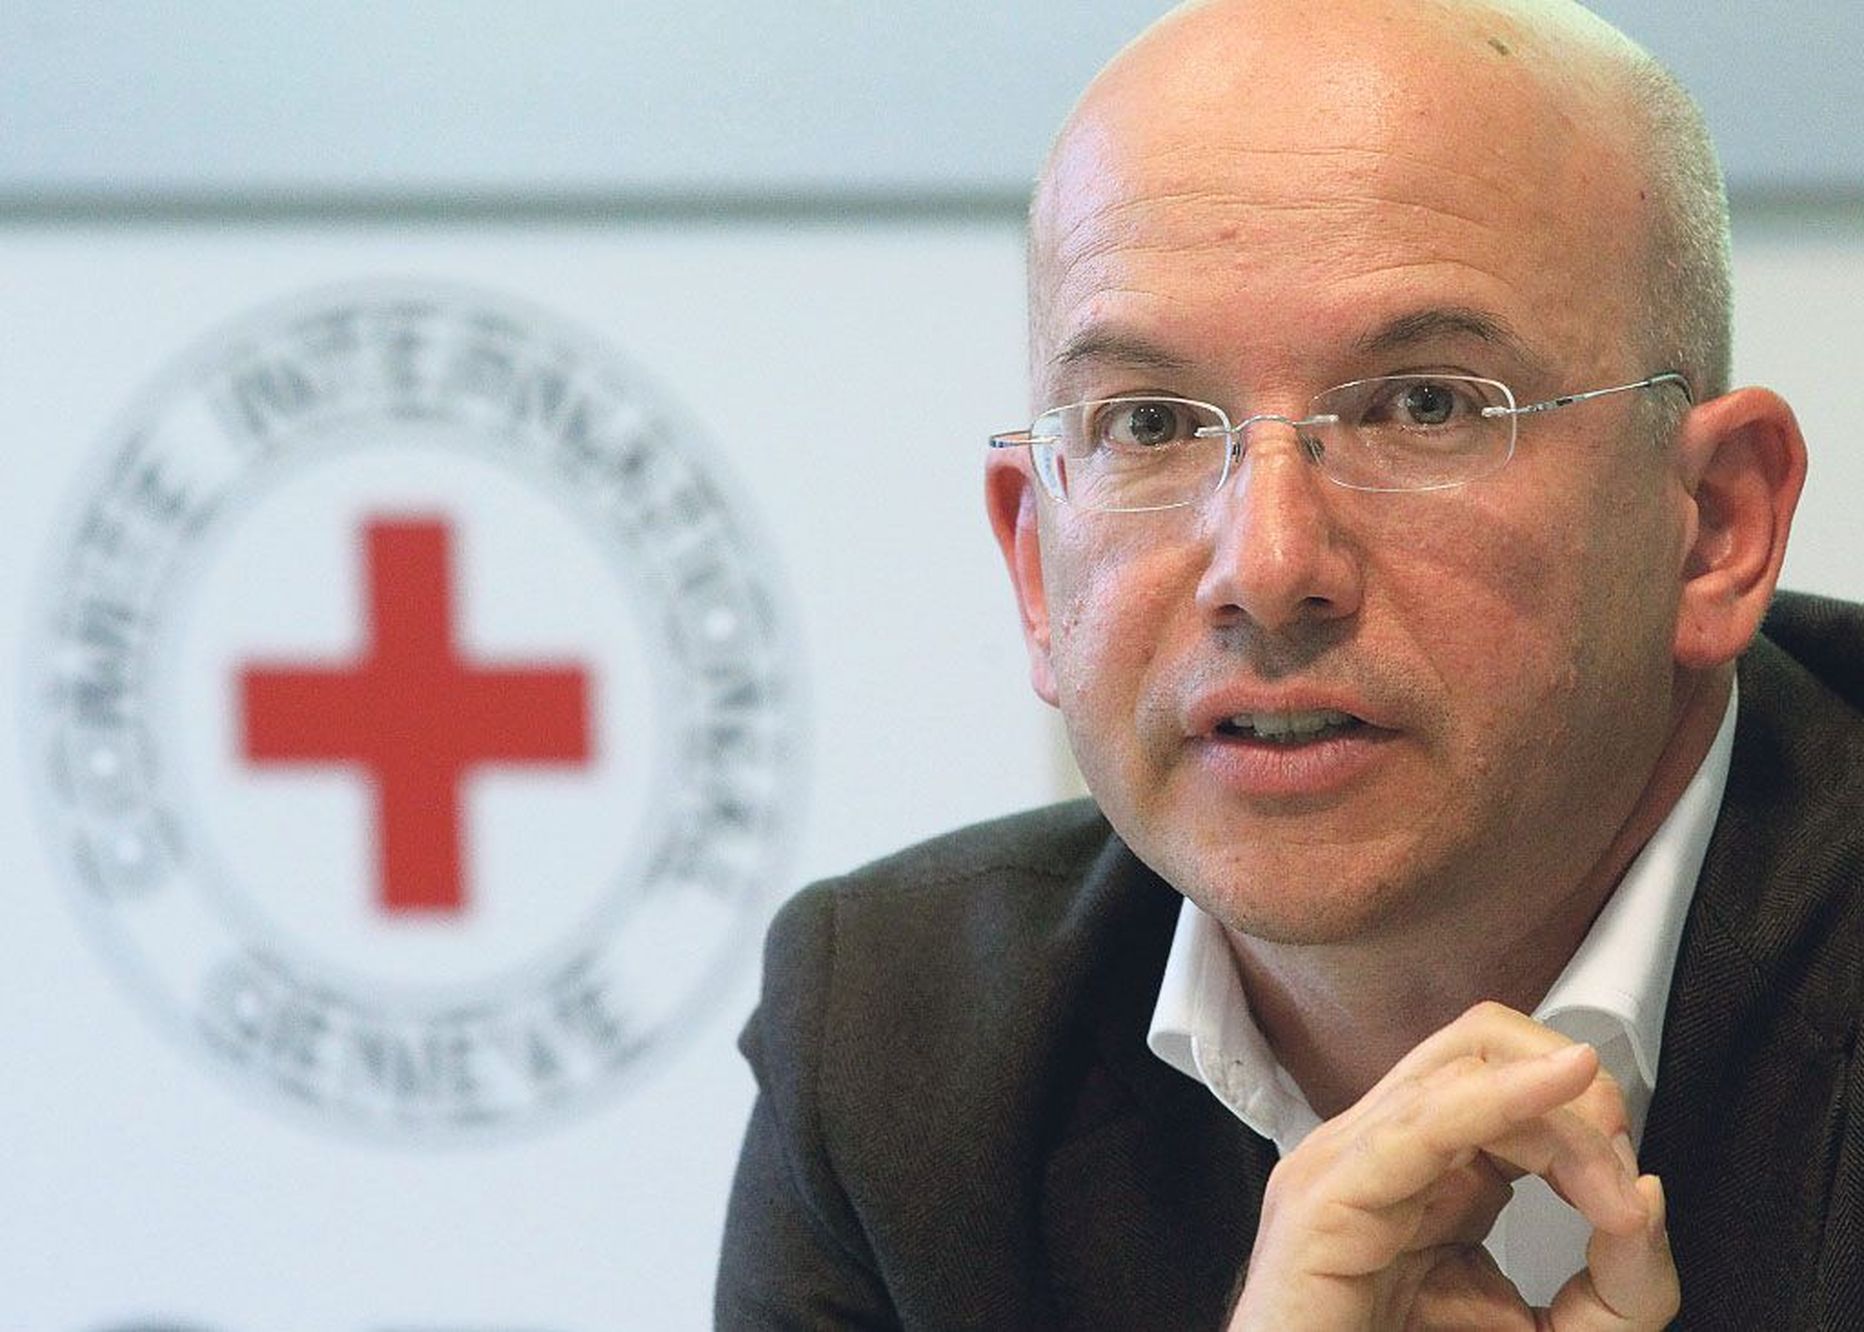 Rahvusvahelise Punase Risti komitee peadirektor Yves Daccord hoiatab Euroopat raskete aastate eest ning soovitab rahvuslikel Punase Risti seltsidel keskenduda oma riikide vaeste ja puudust kannatajate abistamisele.